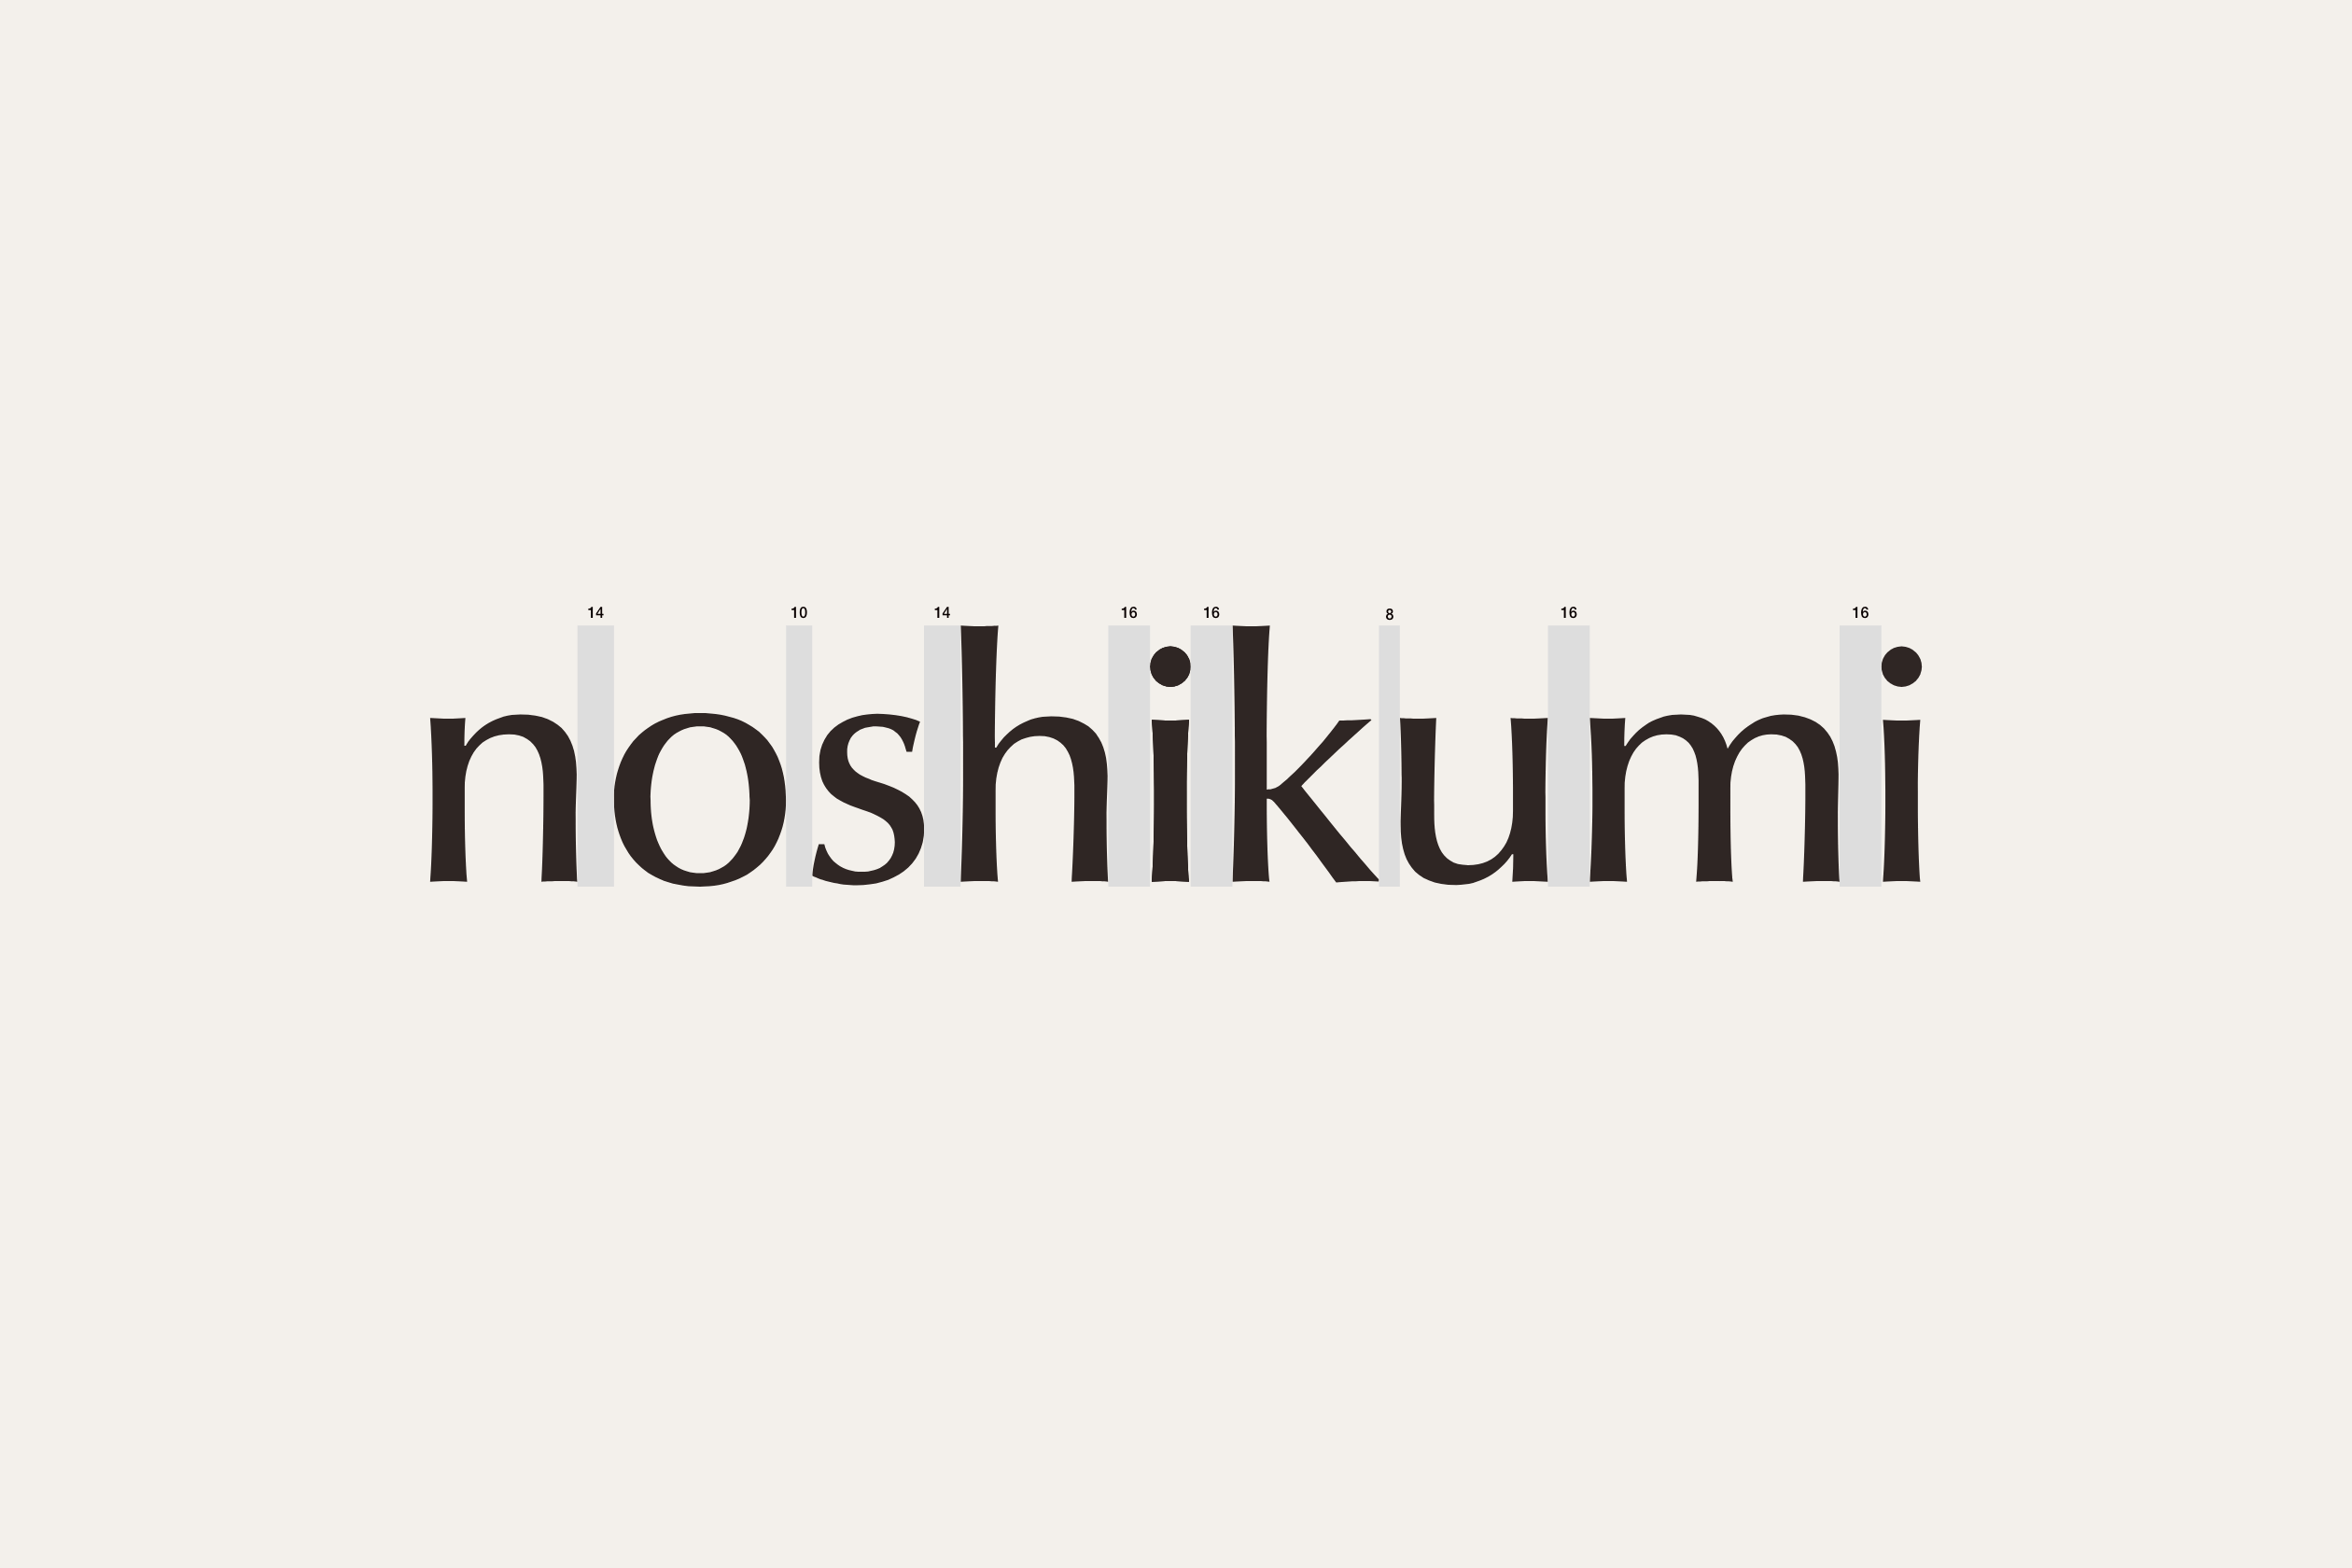 「noshikumi」ロゴタイプのデザイン画像